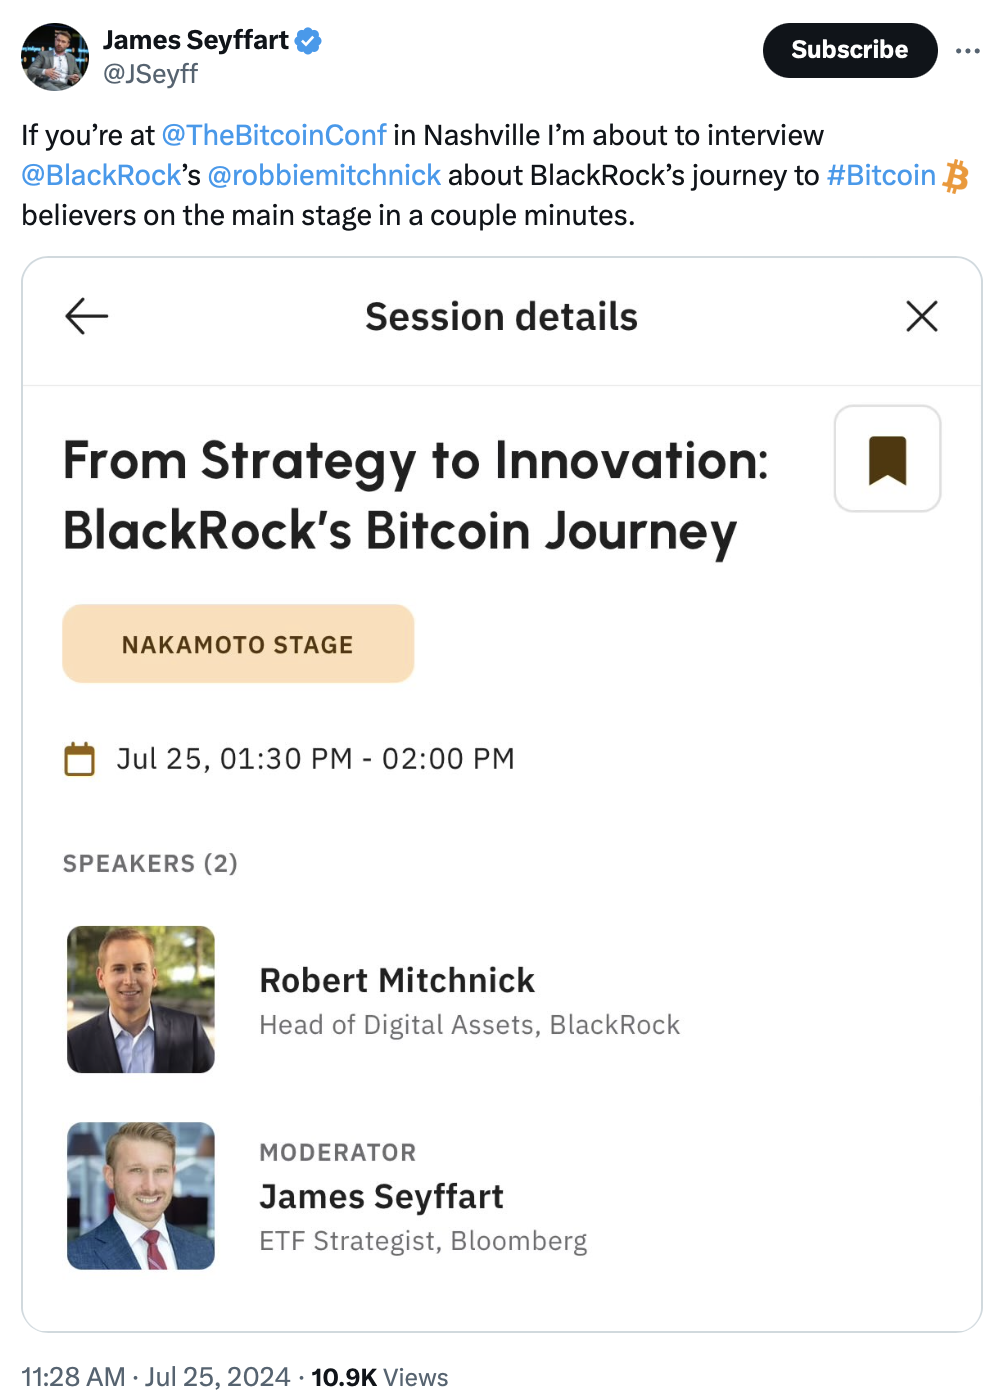 Nhu cầu trực tiếp từ khách hàng thúc đẩy sự phát triển của Quỹ Bitcoin của Blackrock đến nay